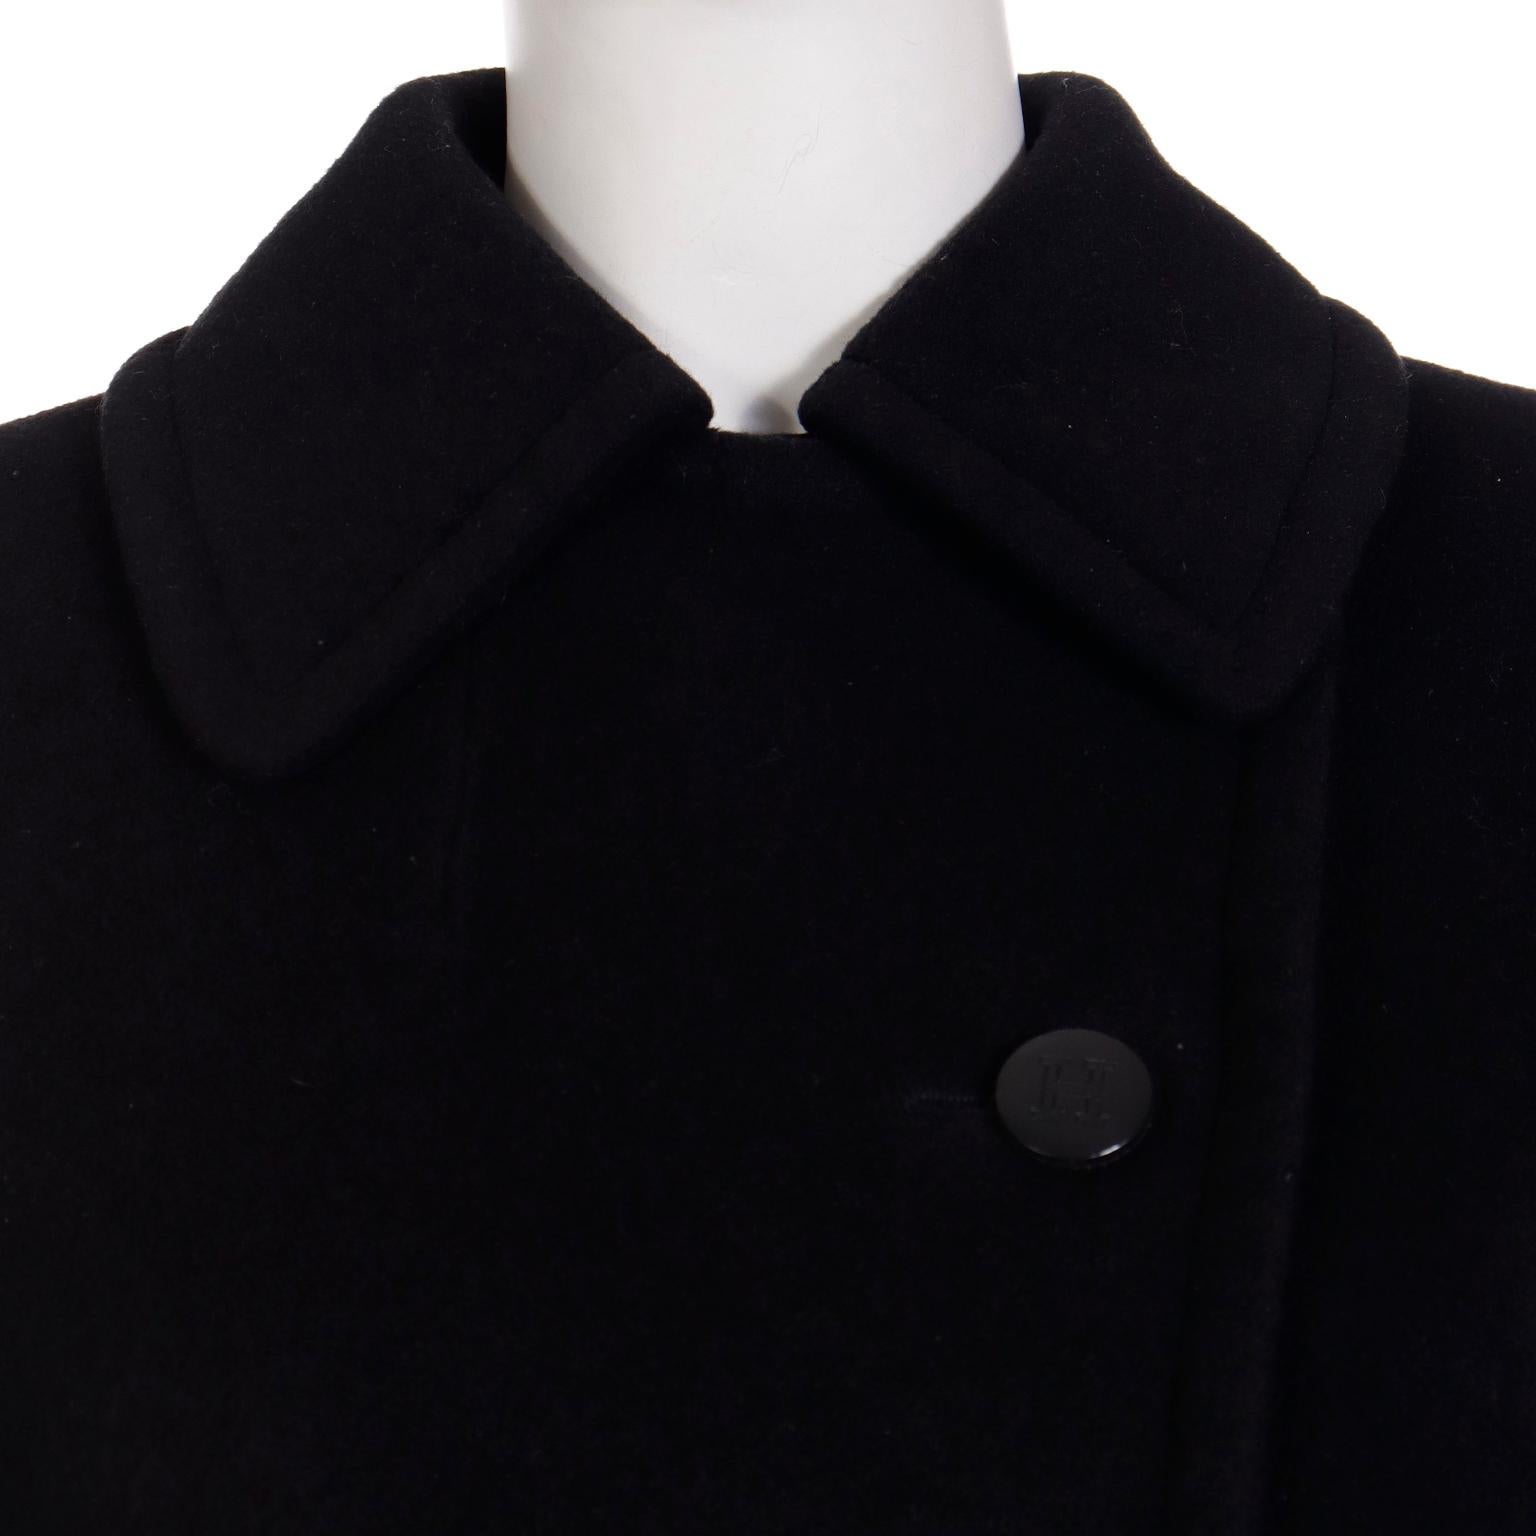 Vintage Hermes Black Cashmere Coat With Toggle Closure Hem & Drawstring Belt For Sale 3